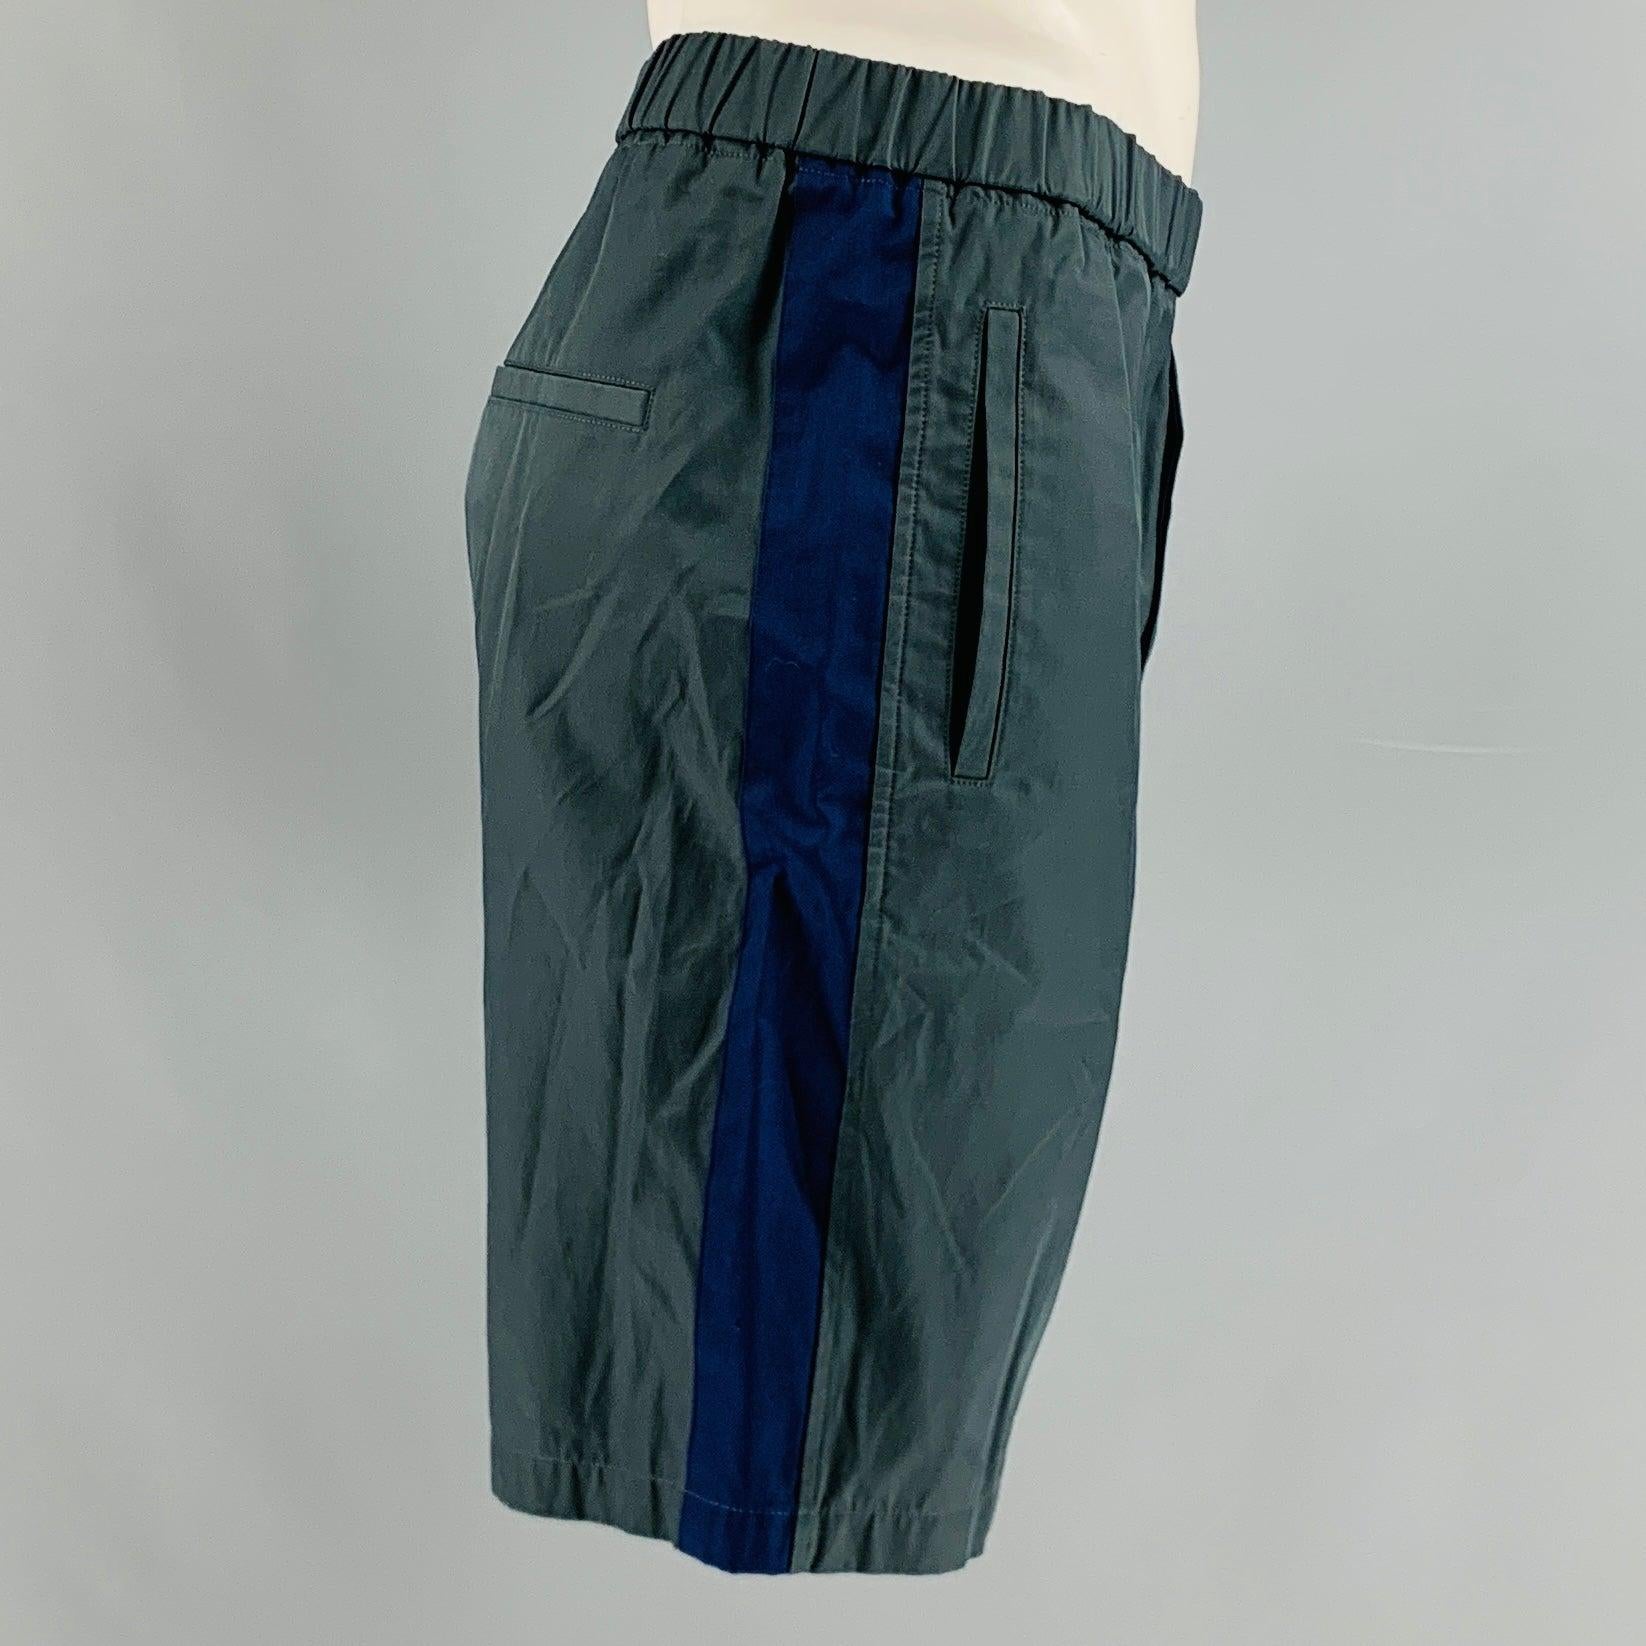 MARNI Shorts aus einer grau-blauen Baumwollmischung mit vertikalen Streifen an der Seitennaht, Vordertaschen und elastischem Bund.
Ausgezeichneter Pre-Owned Zustand. 

Markiert:   50 

Abmessungen: 
  Taille: 34 Zoll Erhöhung: 10 Zoll Innennaht: 8,5